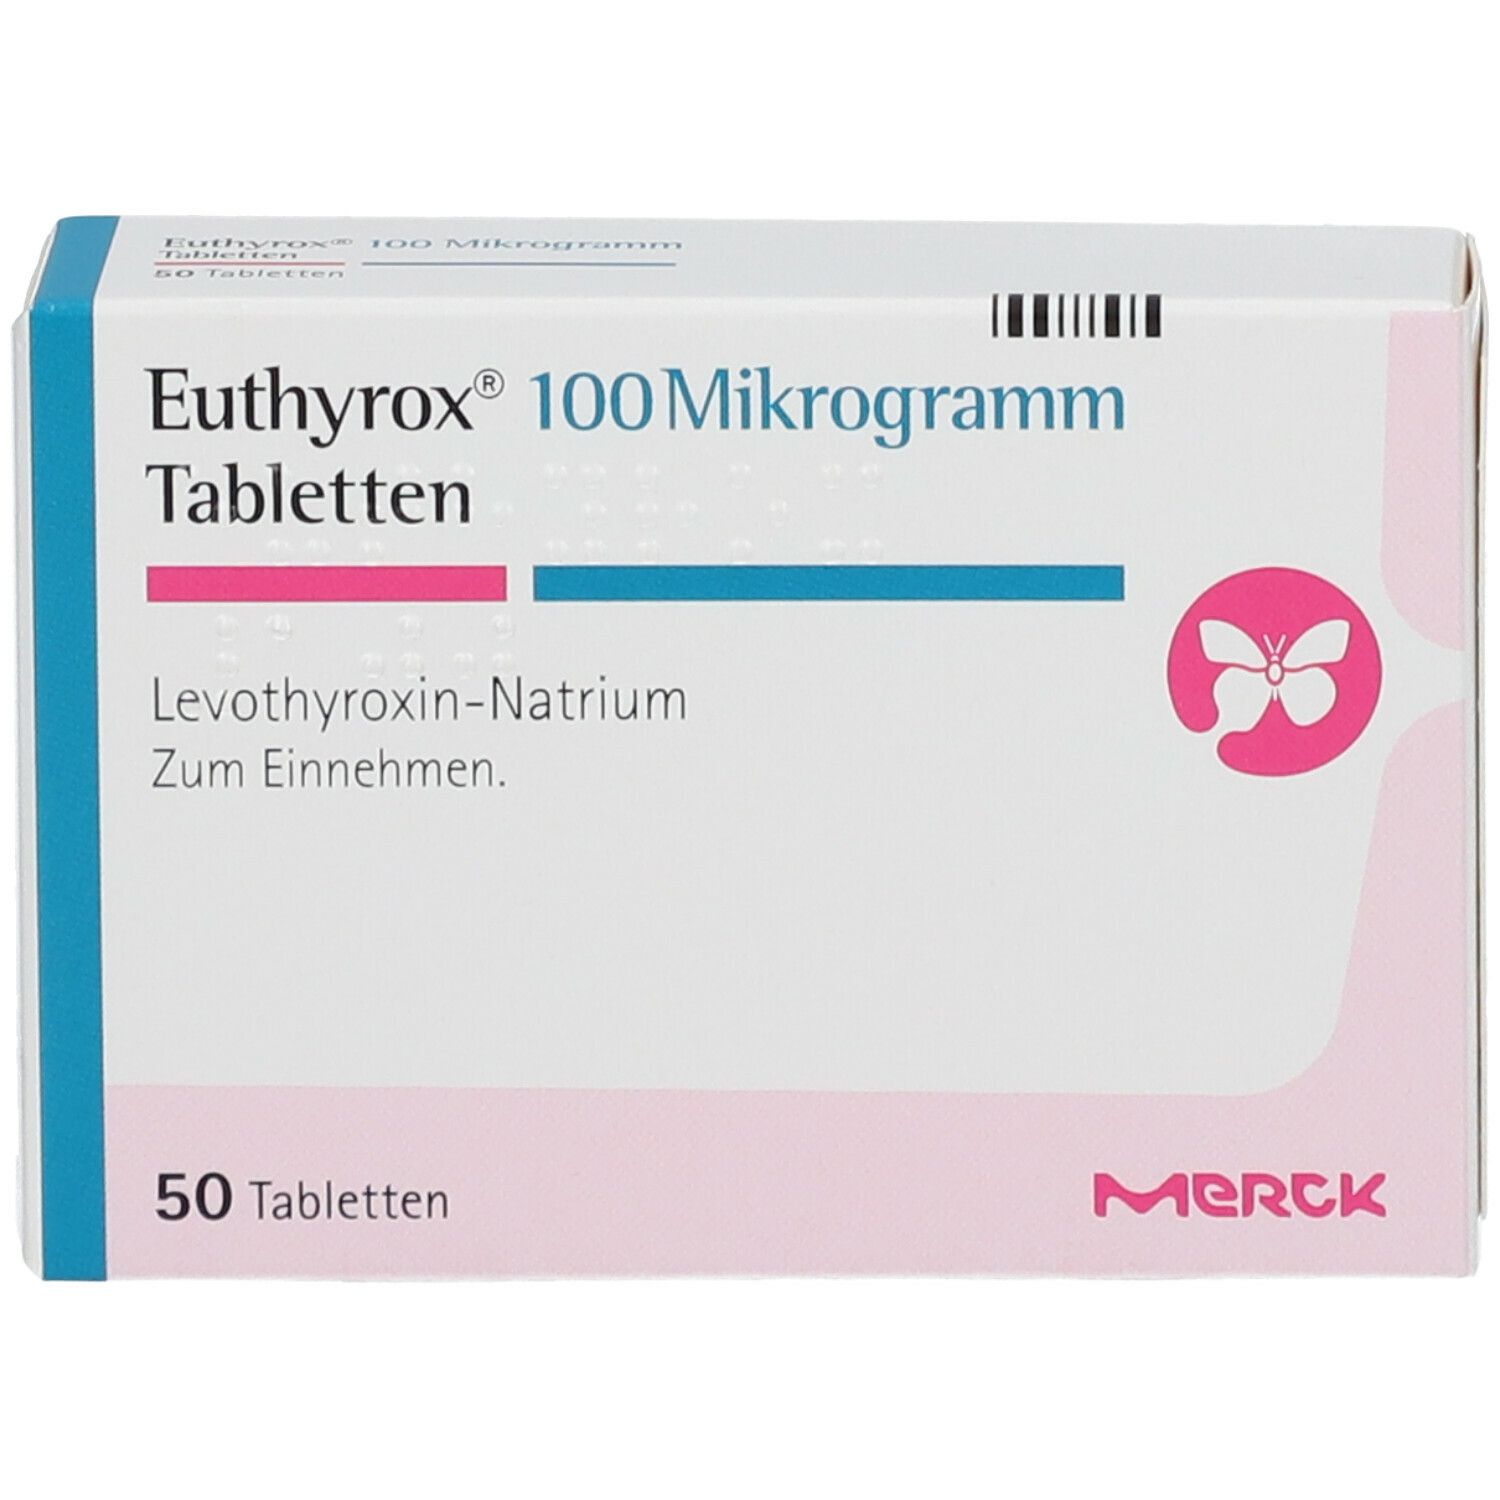 Euthyrox® 100 µg